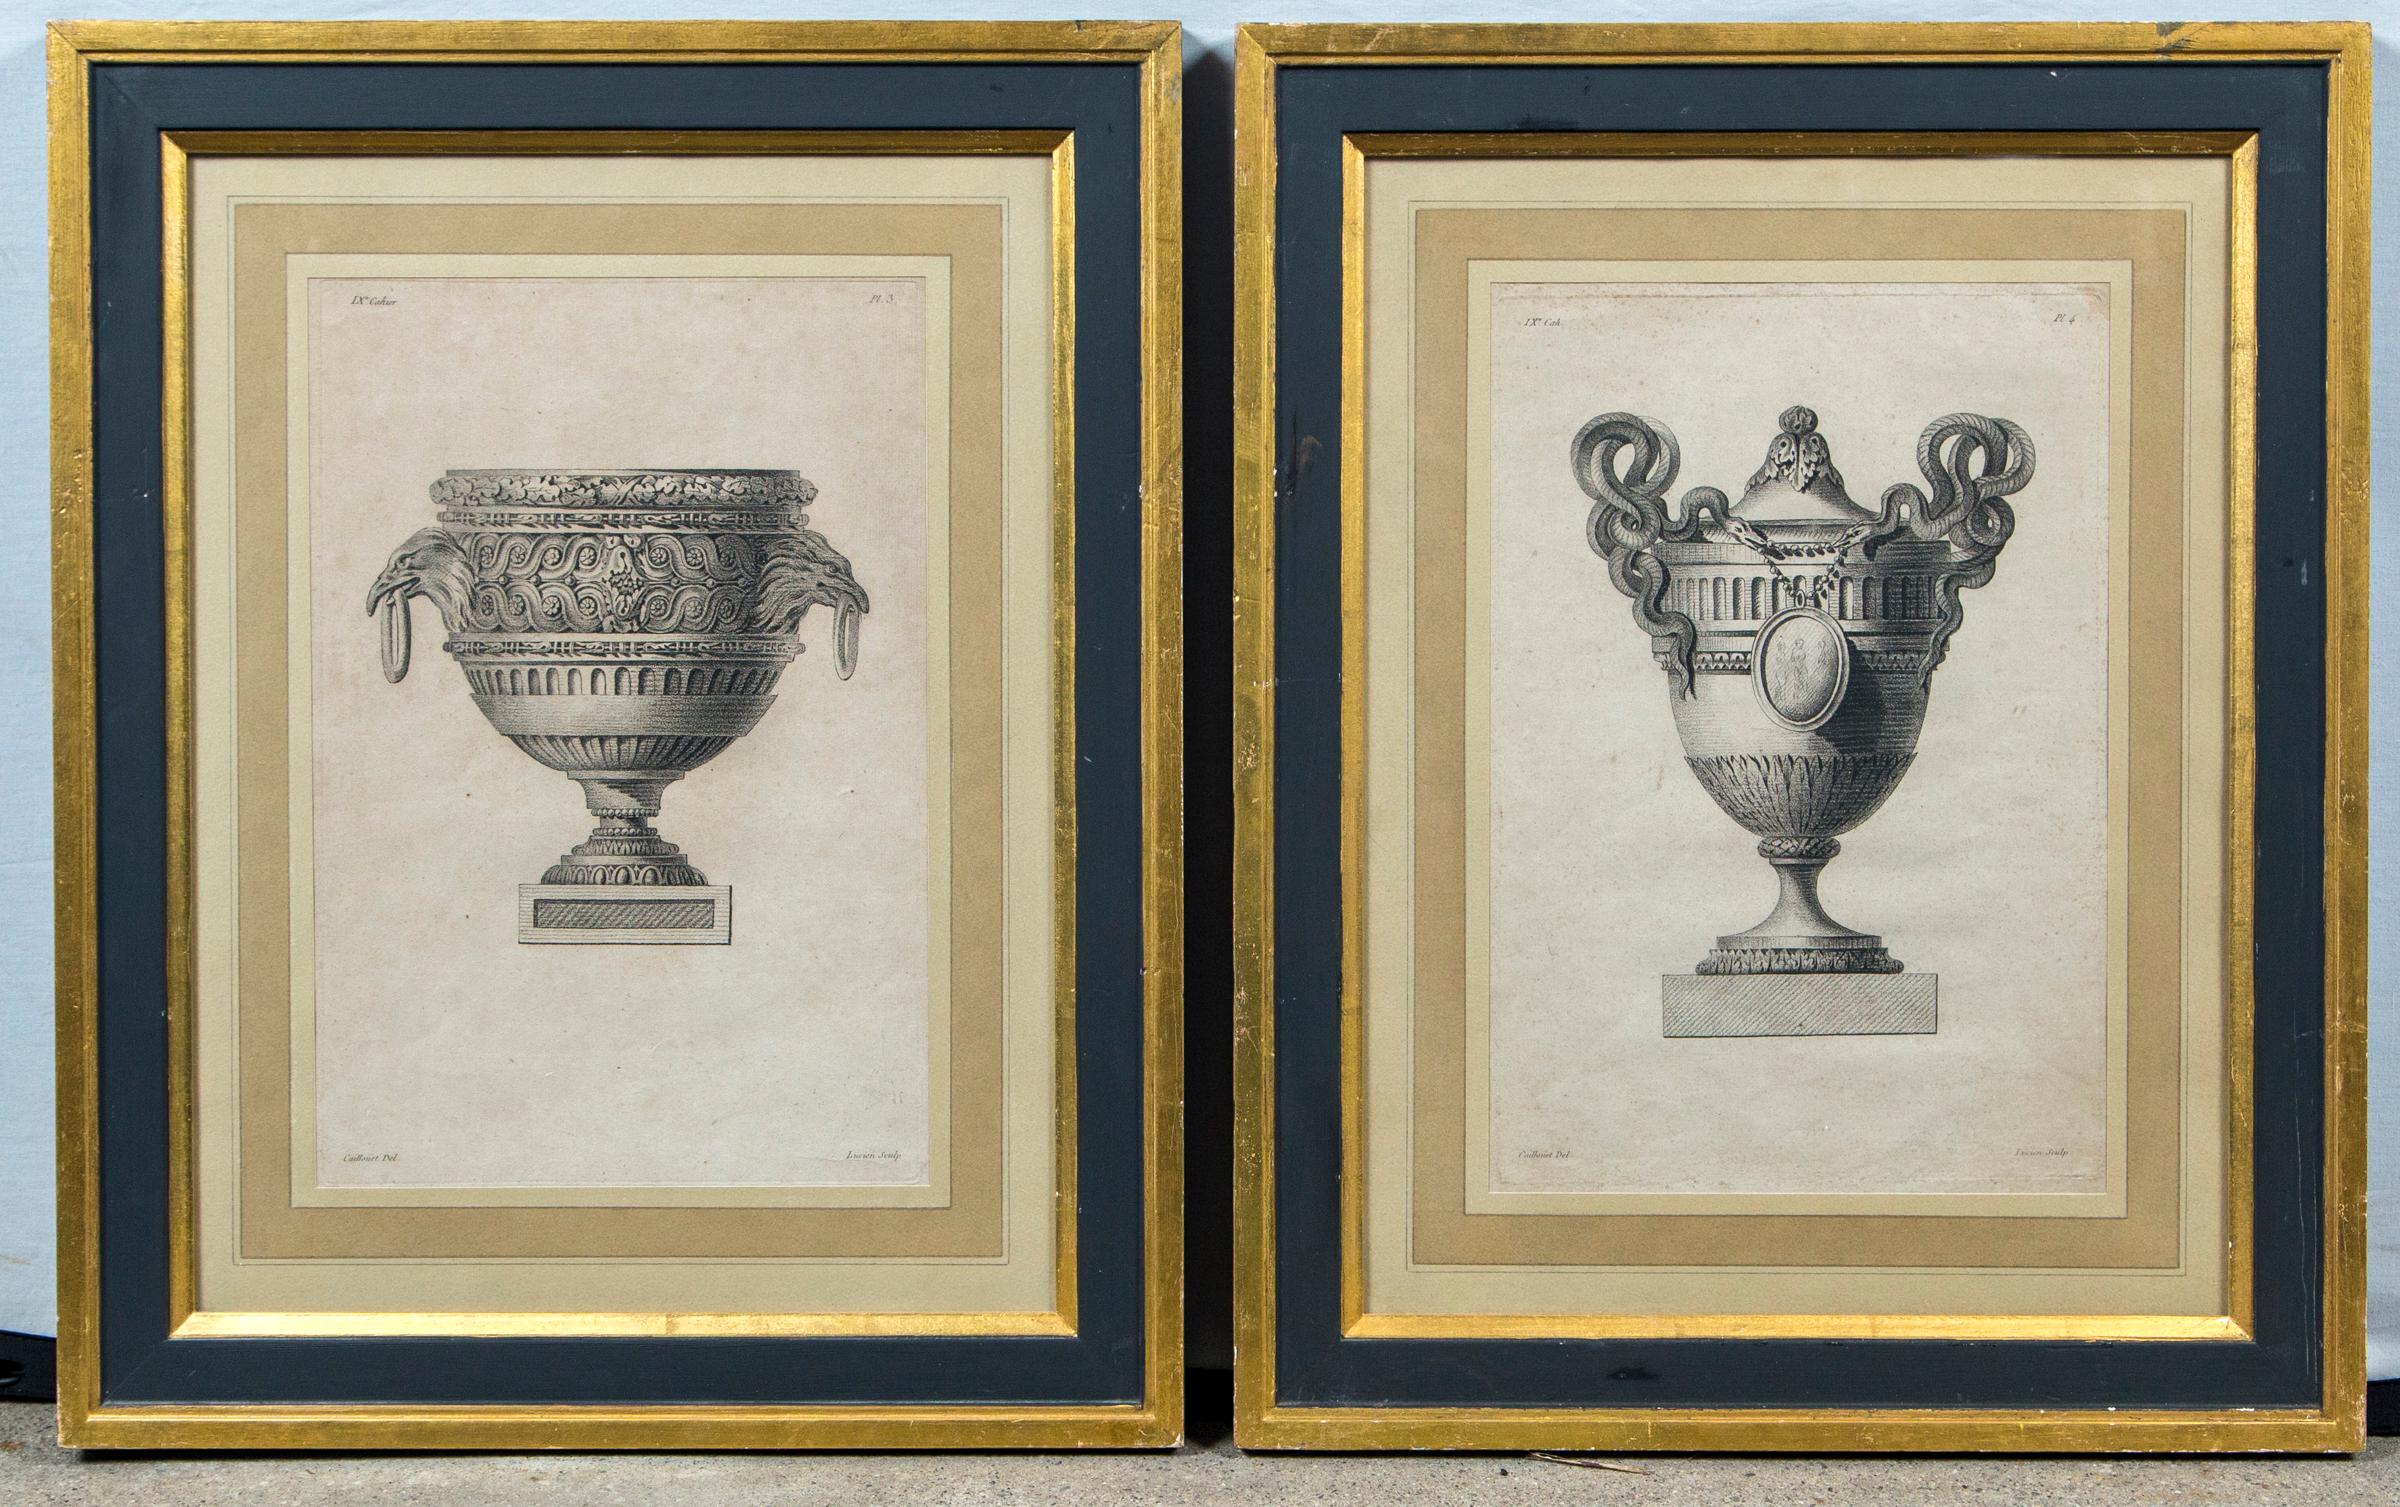 Ensemble de 4 gravures de vases encadrées par Andre-Louis Caillouet (1778-1817), France, fin du XVIIIe siècle. Chaque gravure représente un style différent de vase ornemental, issu de la série 